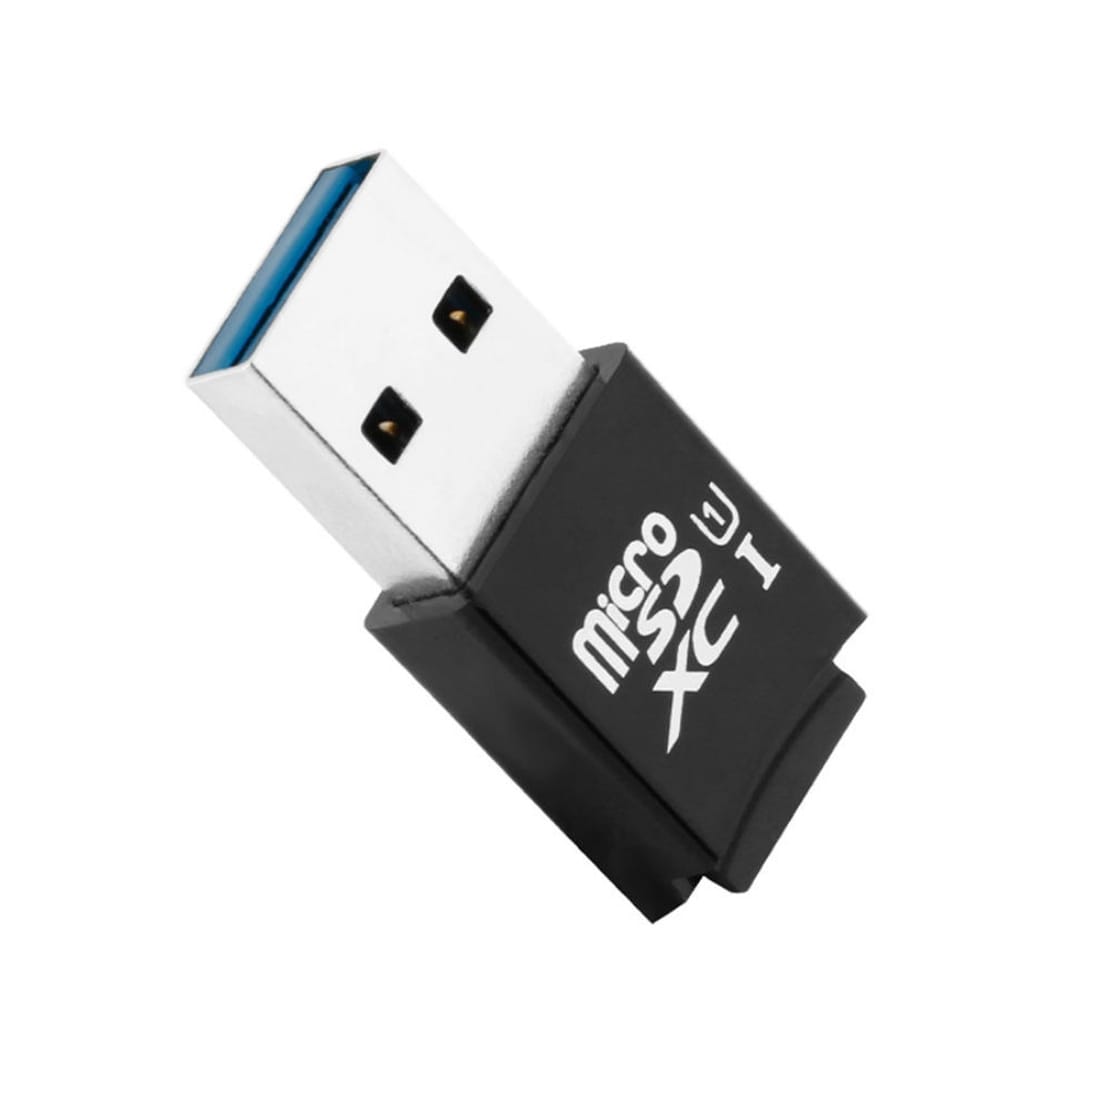 Kaartlezer / kaartadapter voor USB 3.0 naar MicroSD